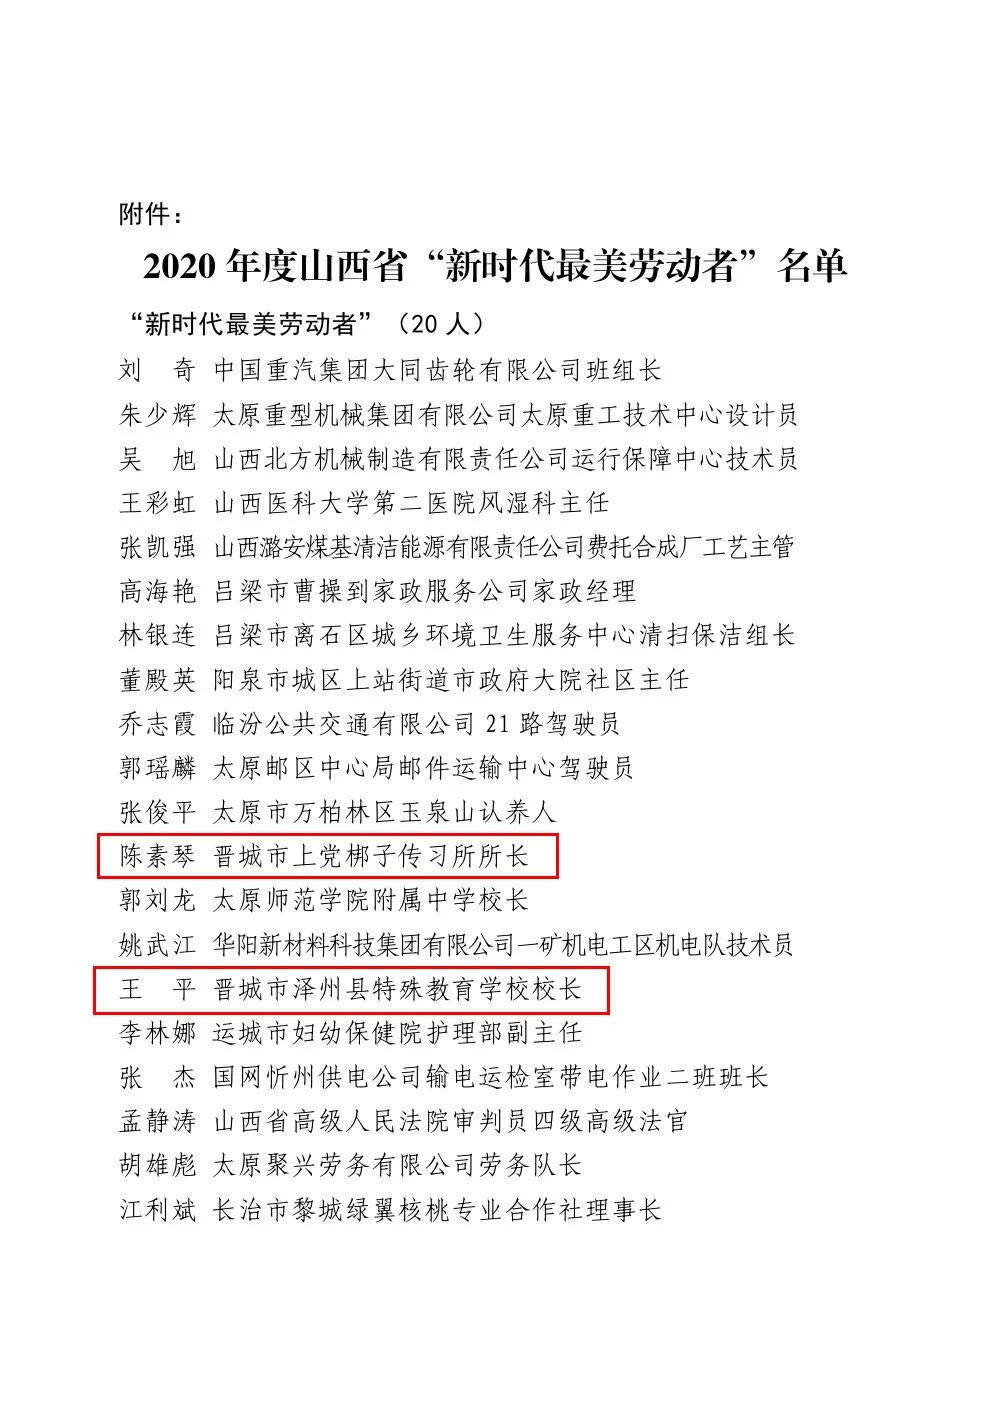 陈素琴、王平荣获2020年度山西省“新时代最美劳动者”荣誉称号